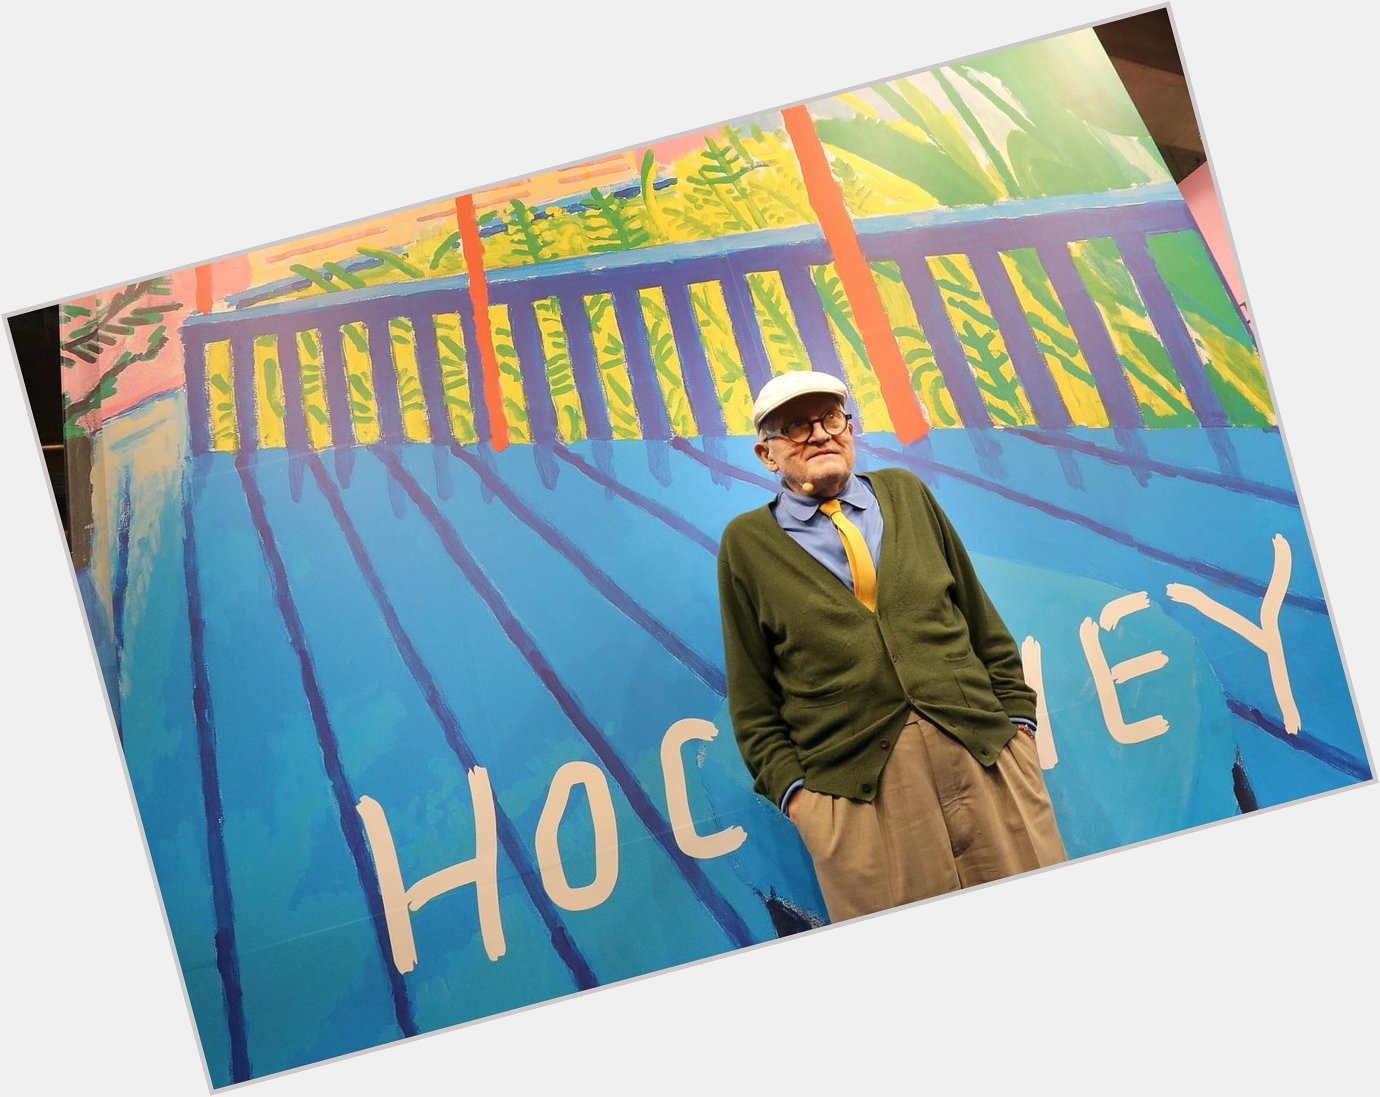 Happy birthday David Hockney. Still making joyous art   